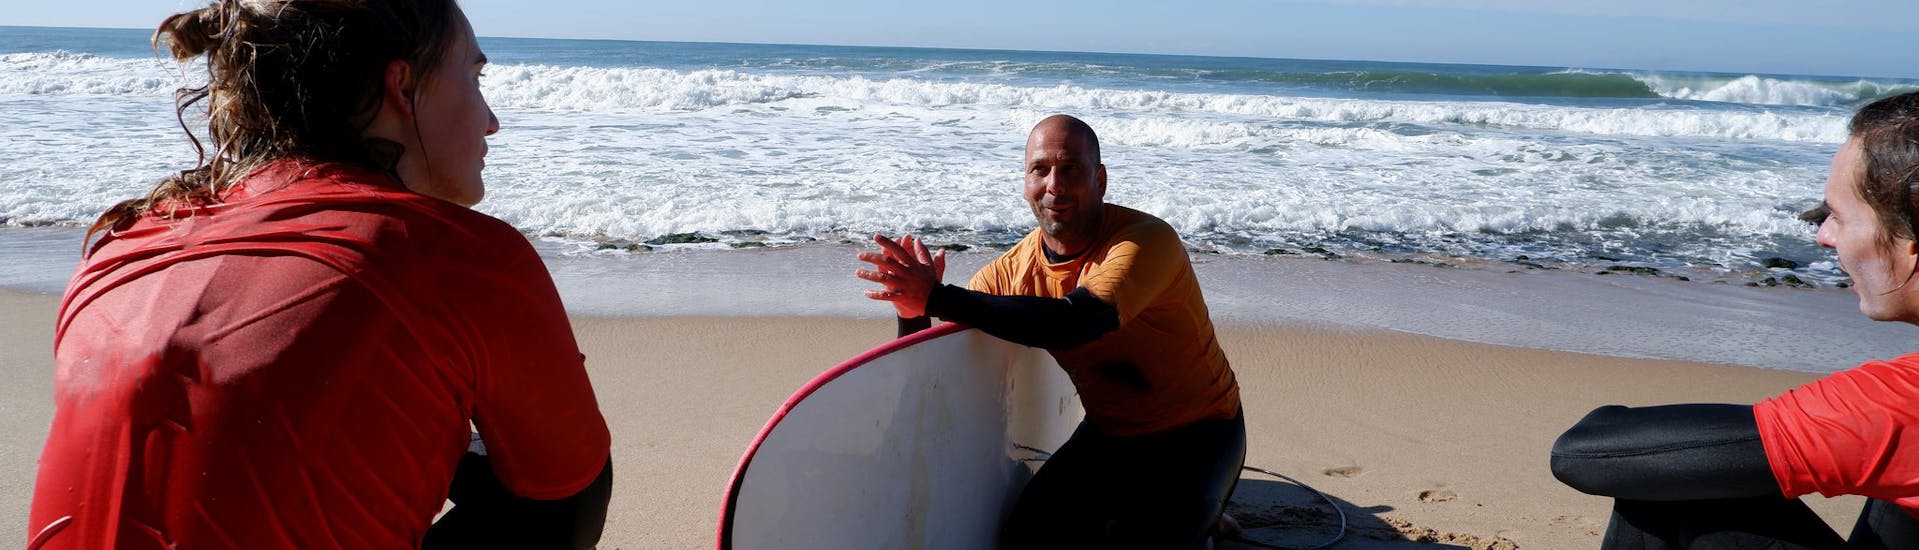 Lezioni private di surf a Ericeira da 12 anni per tutti i livelli.